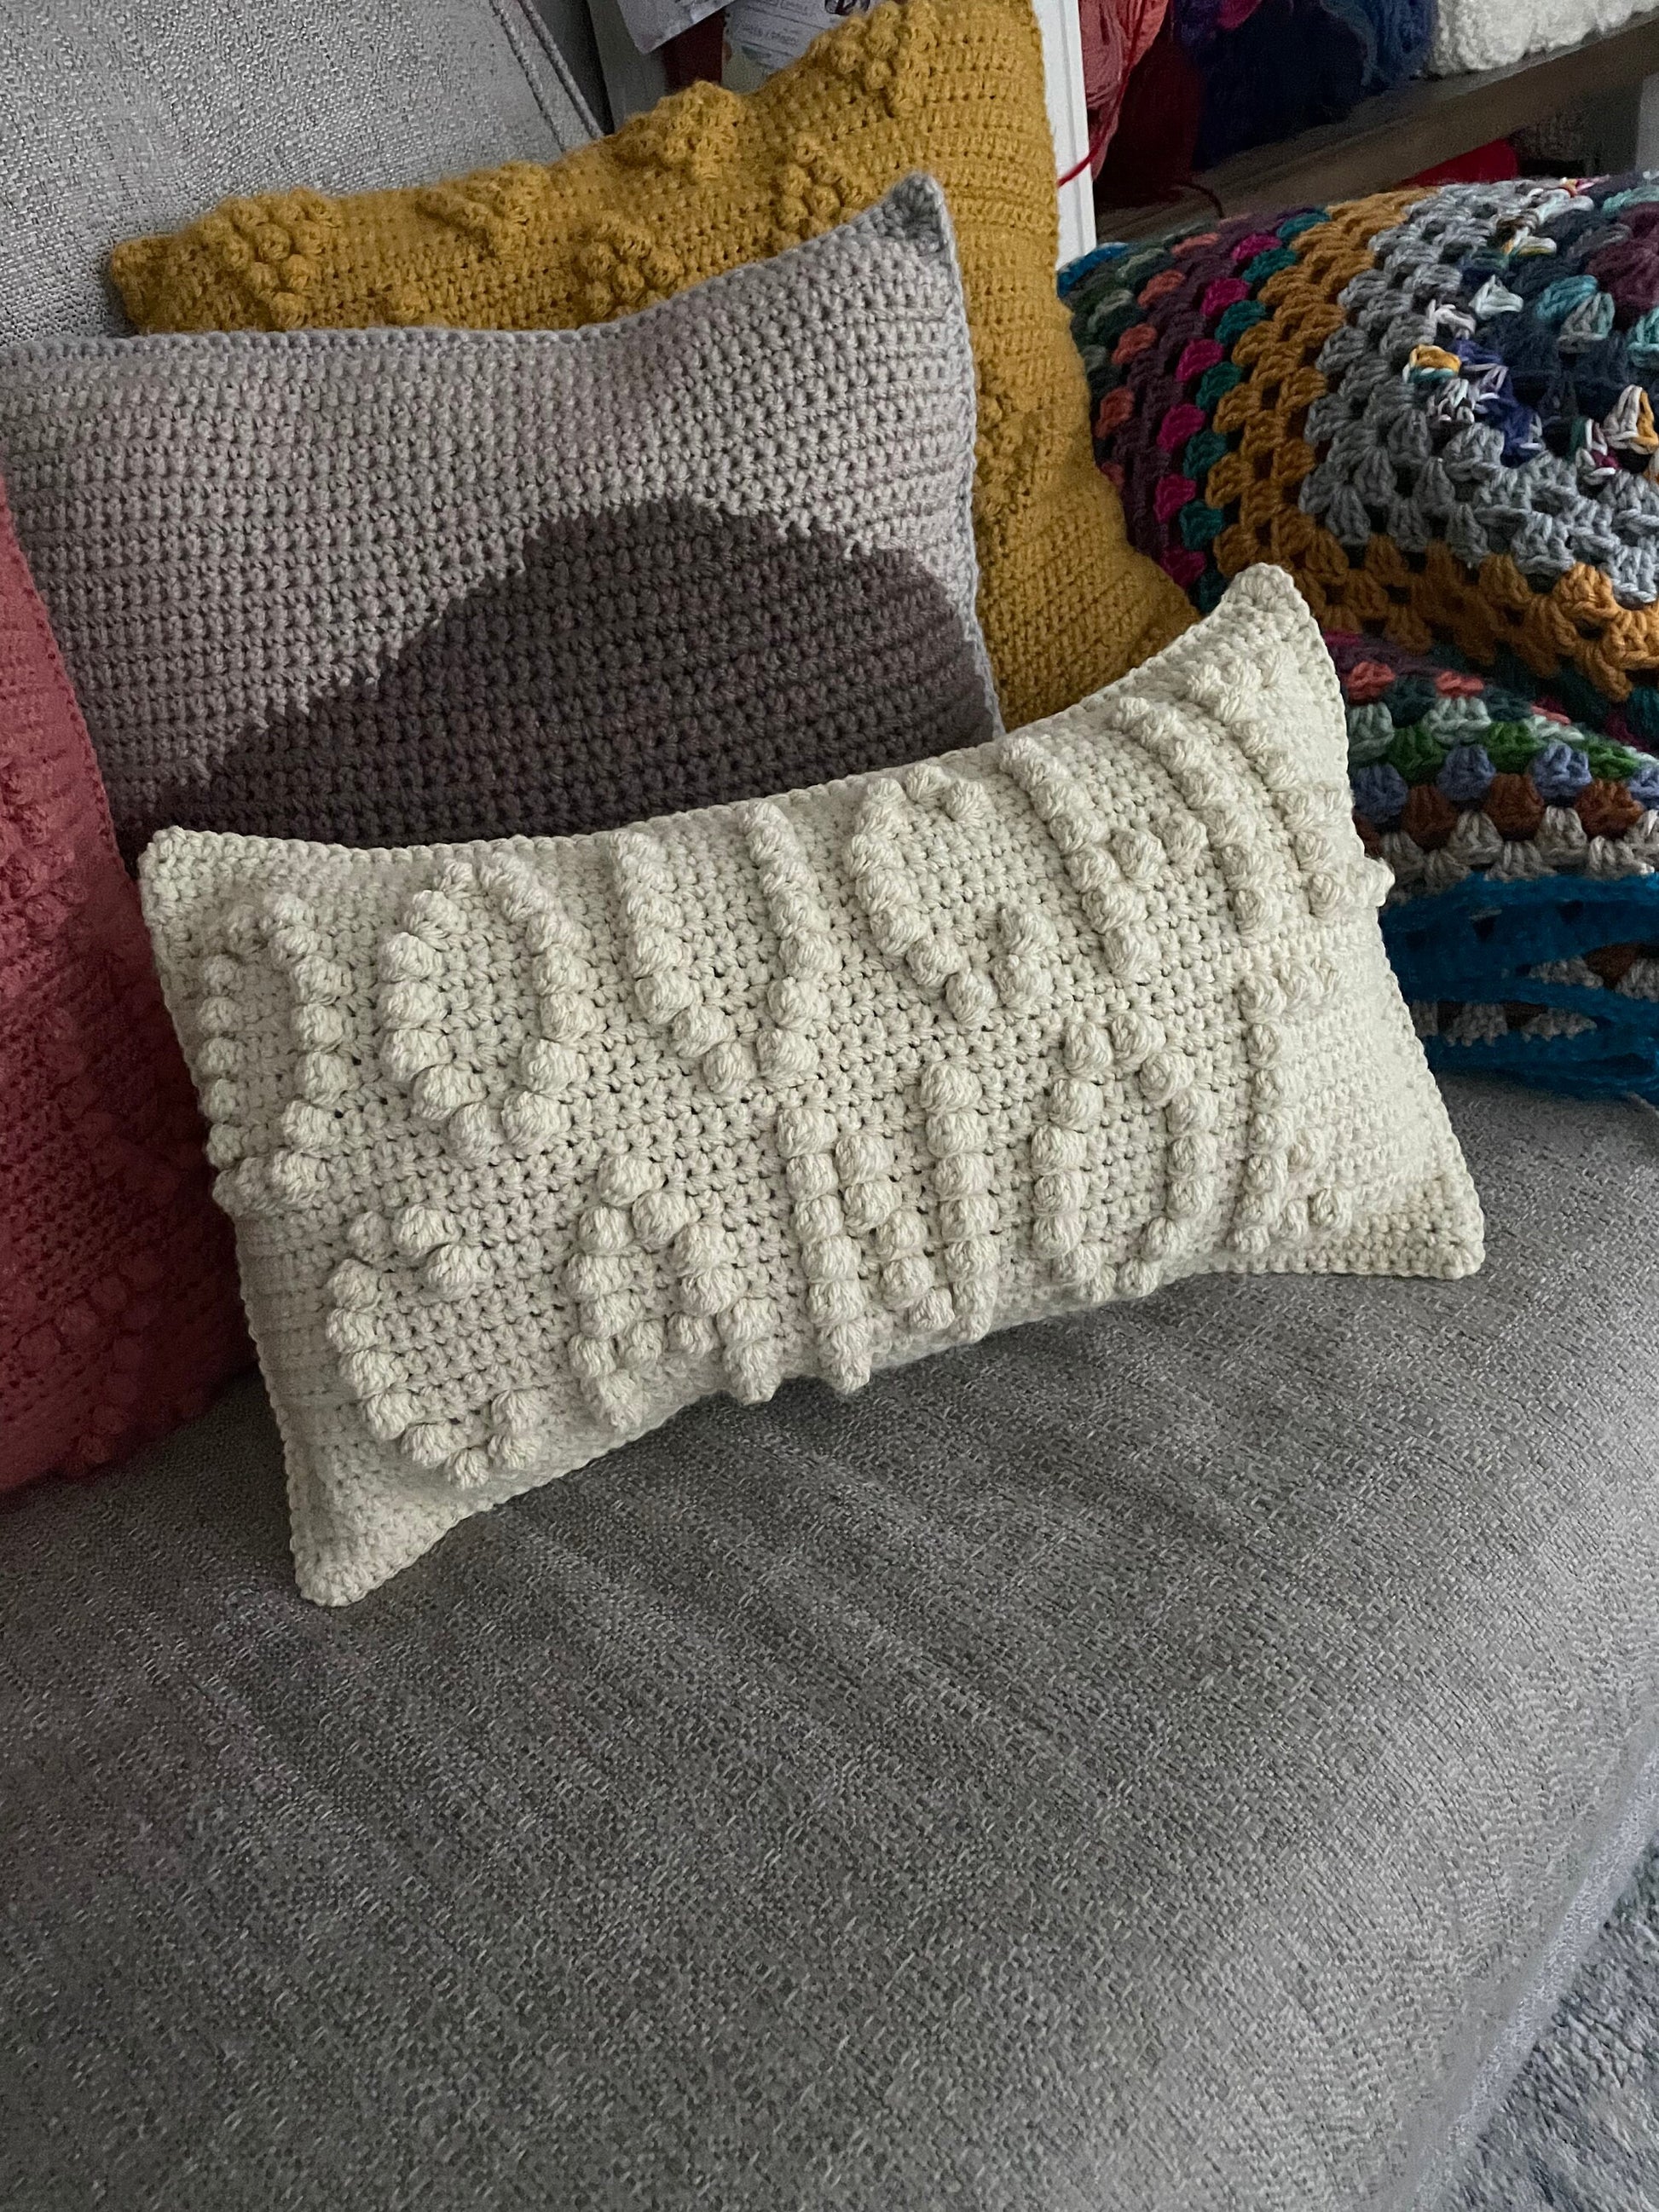 Crochet Pillow Pattern - Fun Crochet Patterns